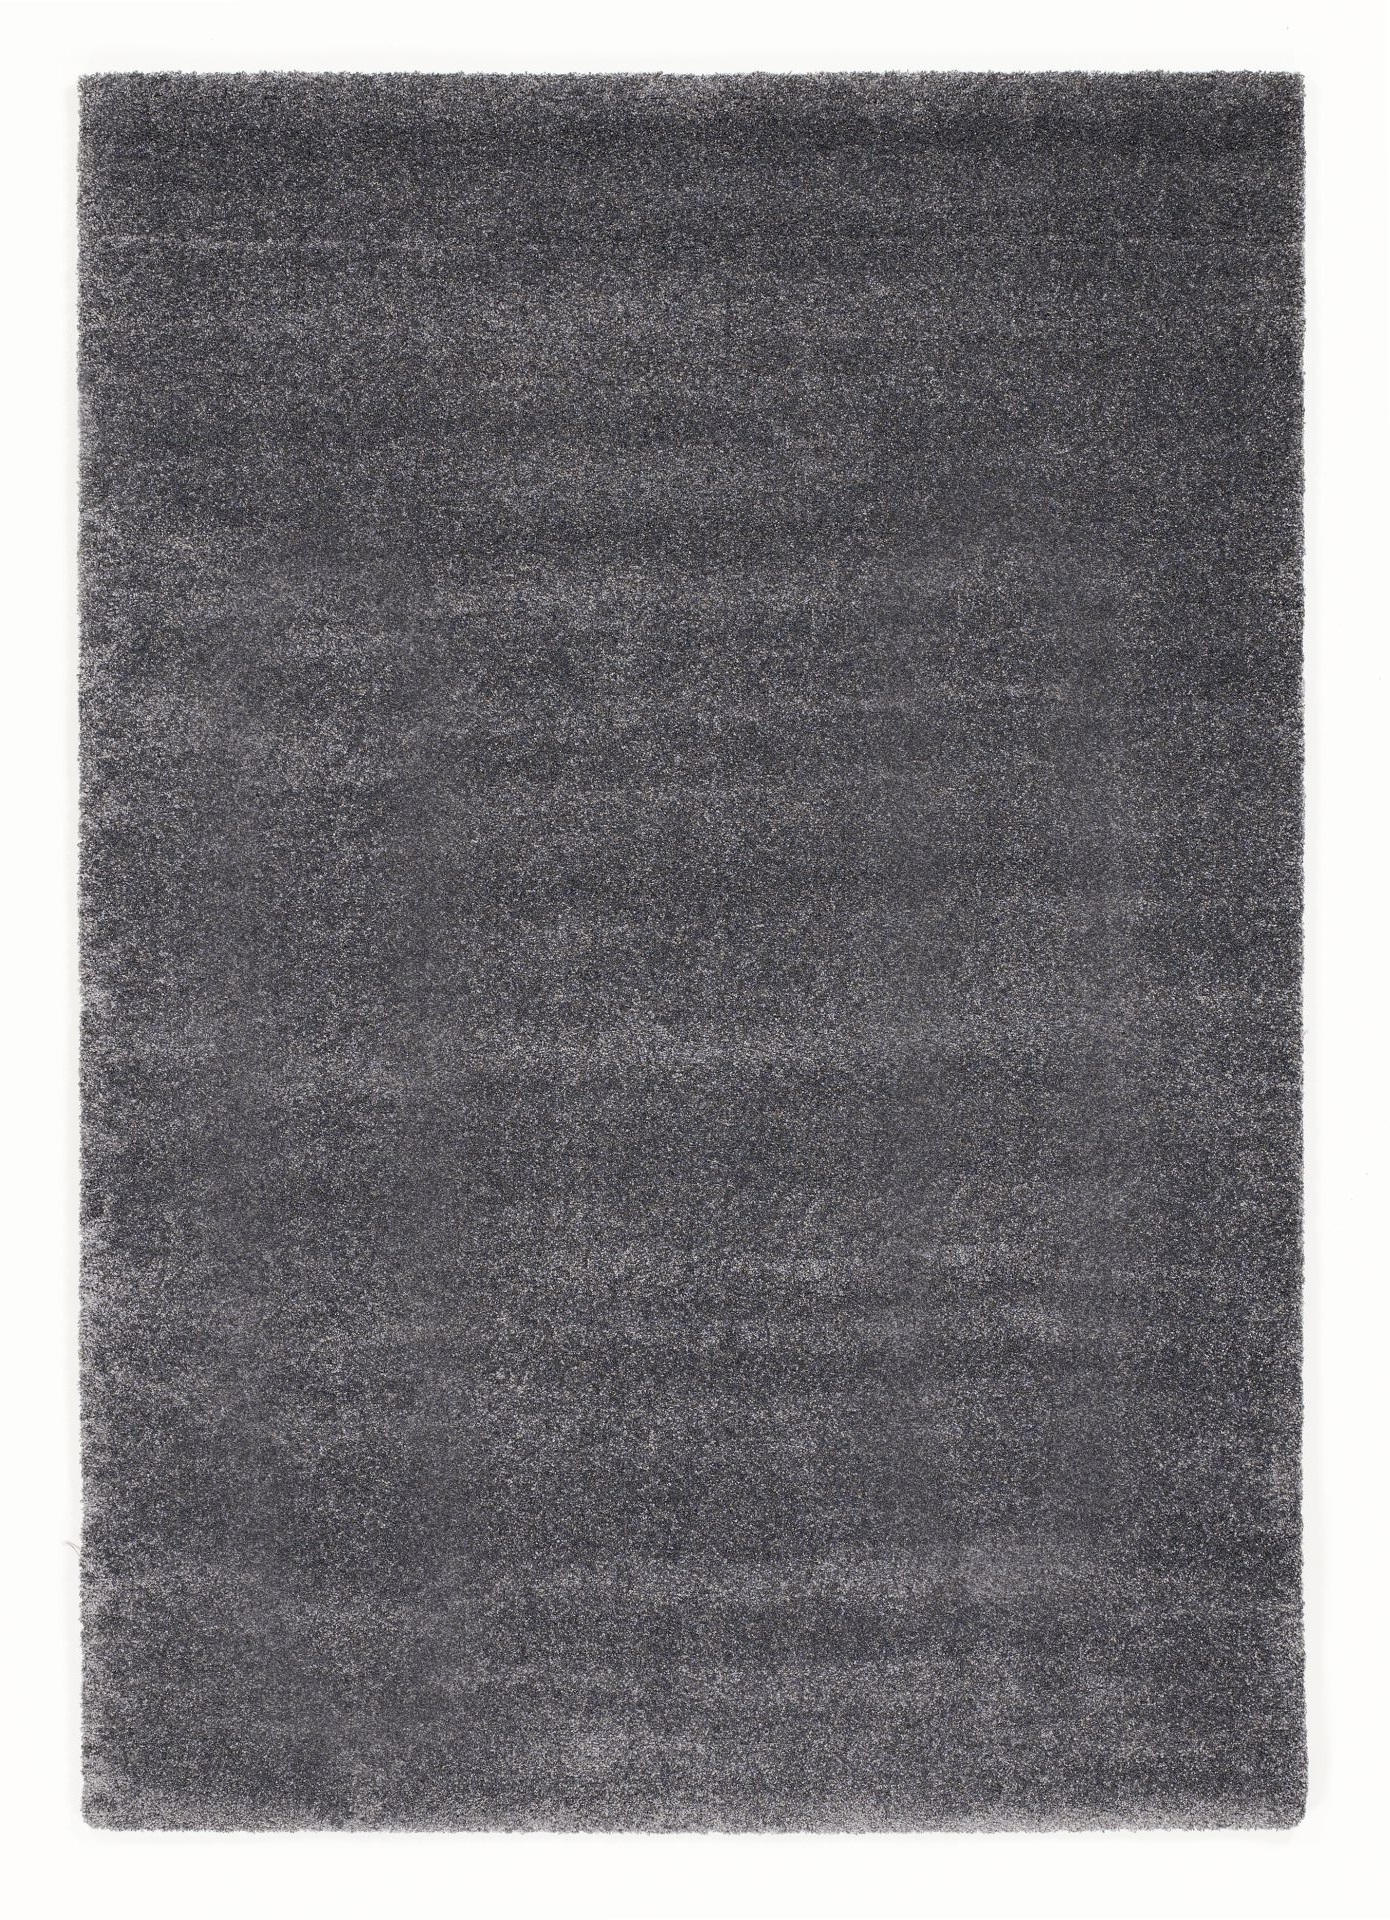 HOCHFLORTEPPICH 240/340 cm Bellevue  - Dunkelgrau, Basics, Textil (240/340cm) - Novel